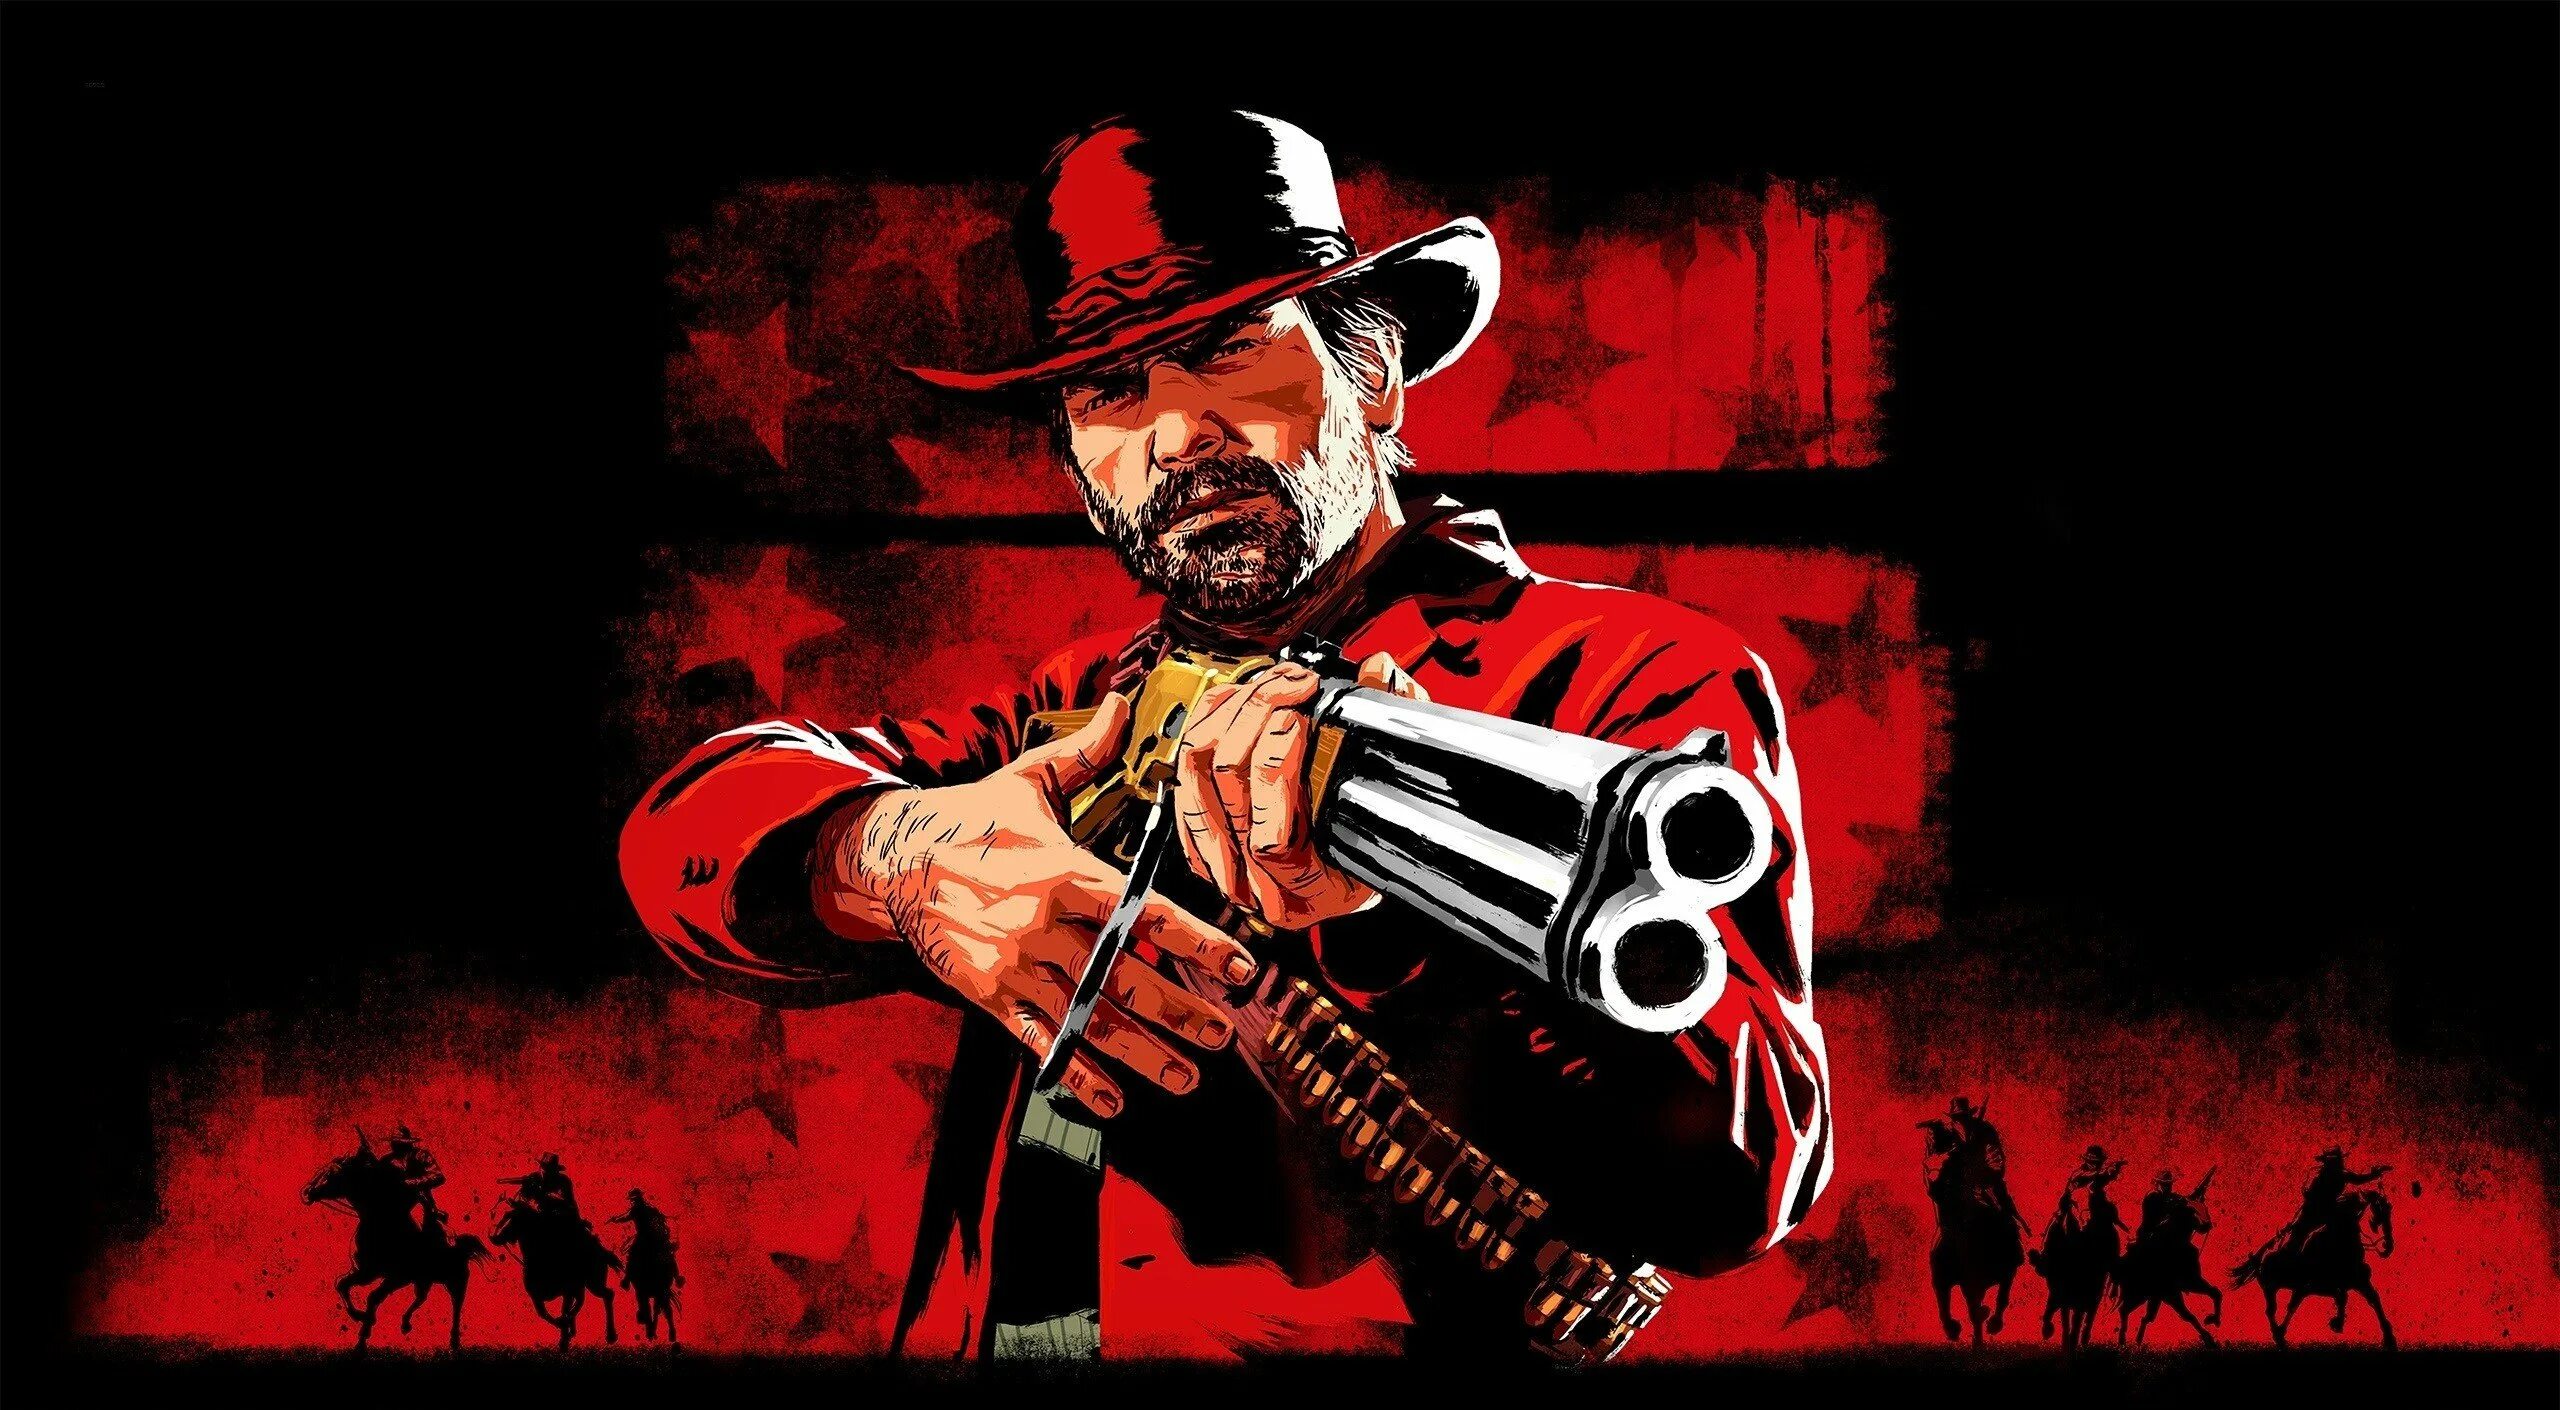 Дем тридемшен. Ред дед редемпшен 2. Игра ред деад редемптион 2. Red Dead Redemption 2 2560 x 1440.